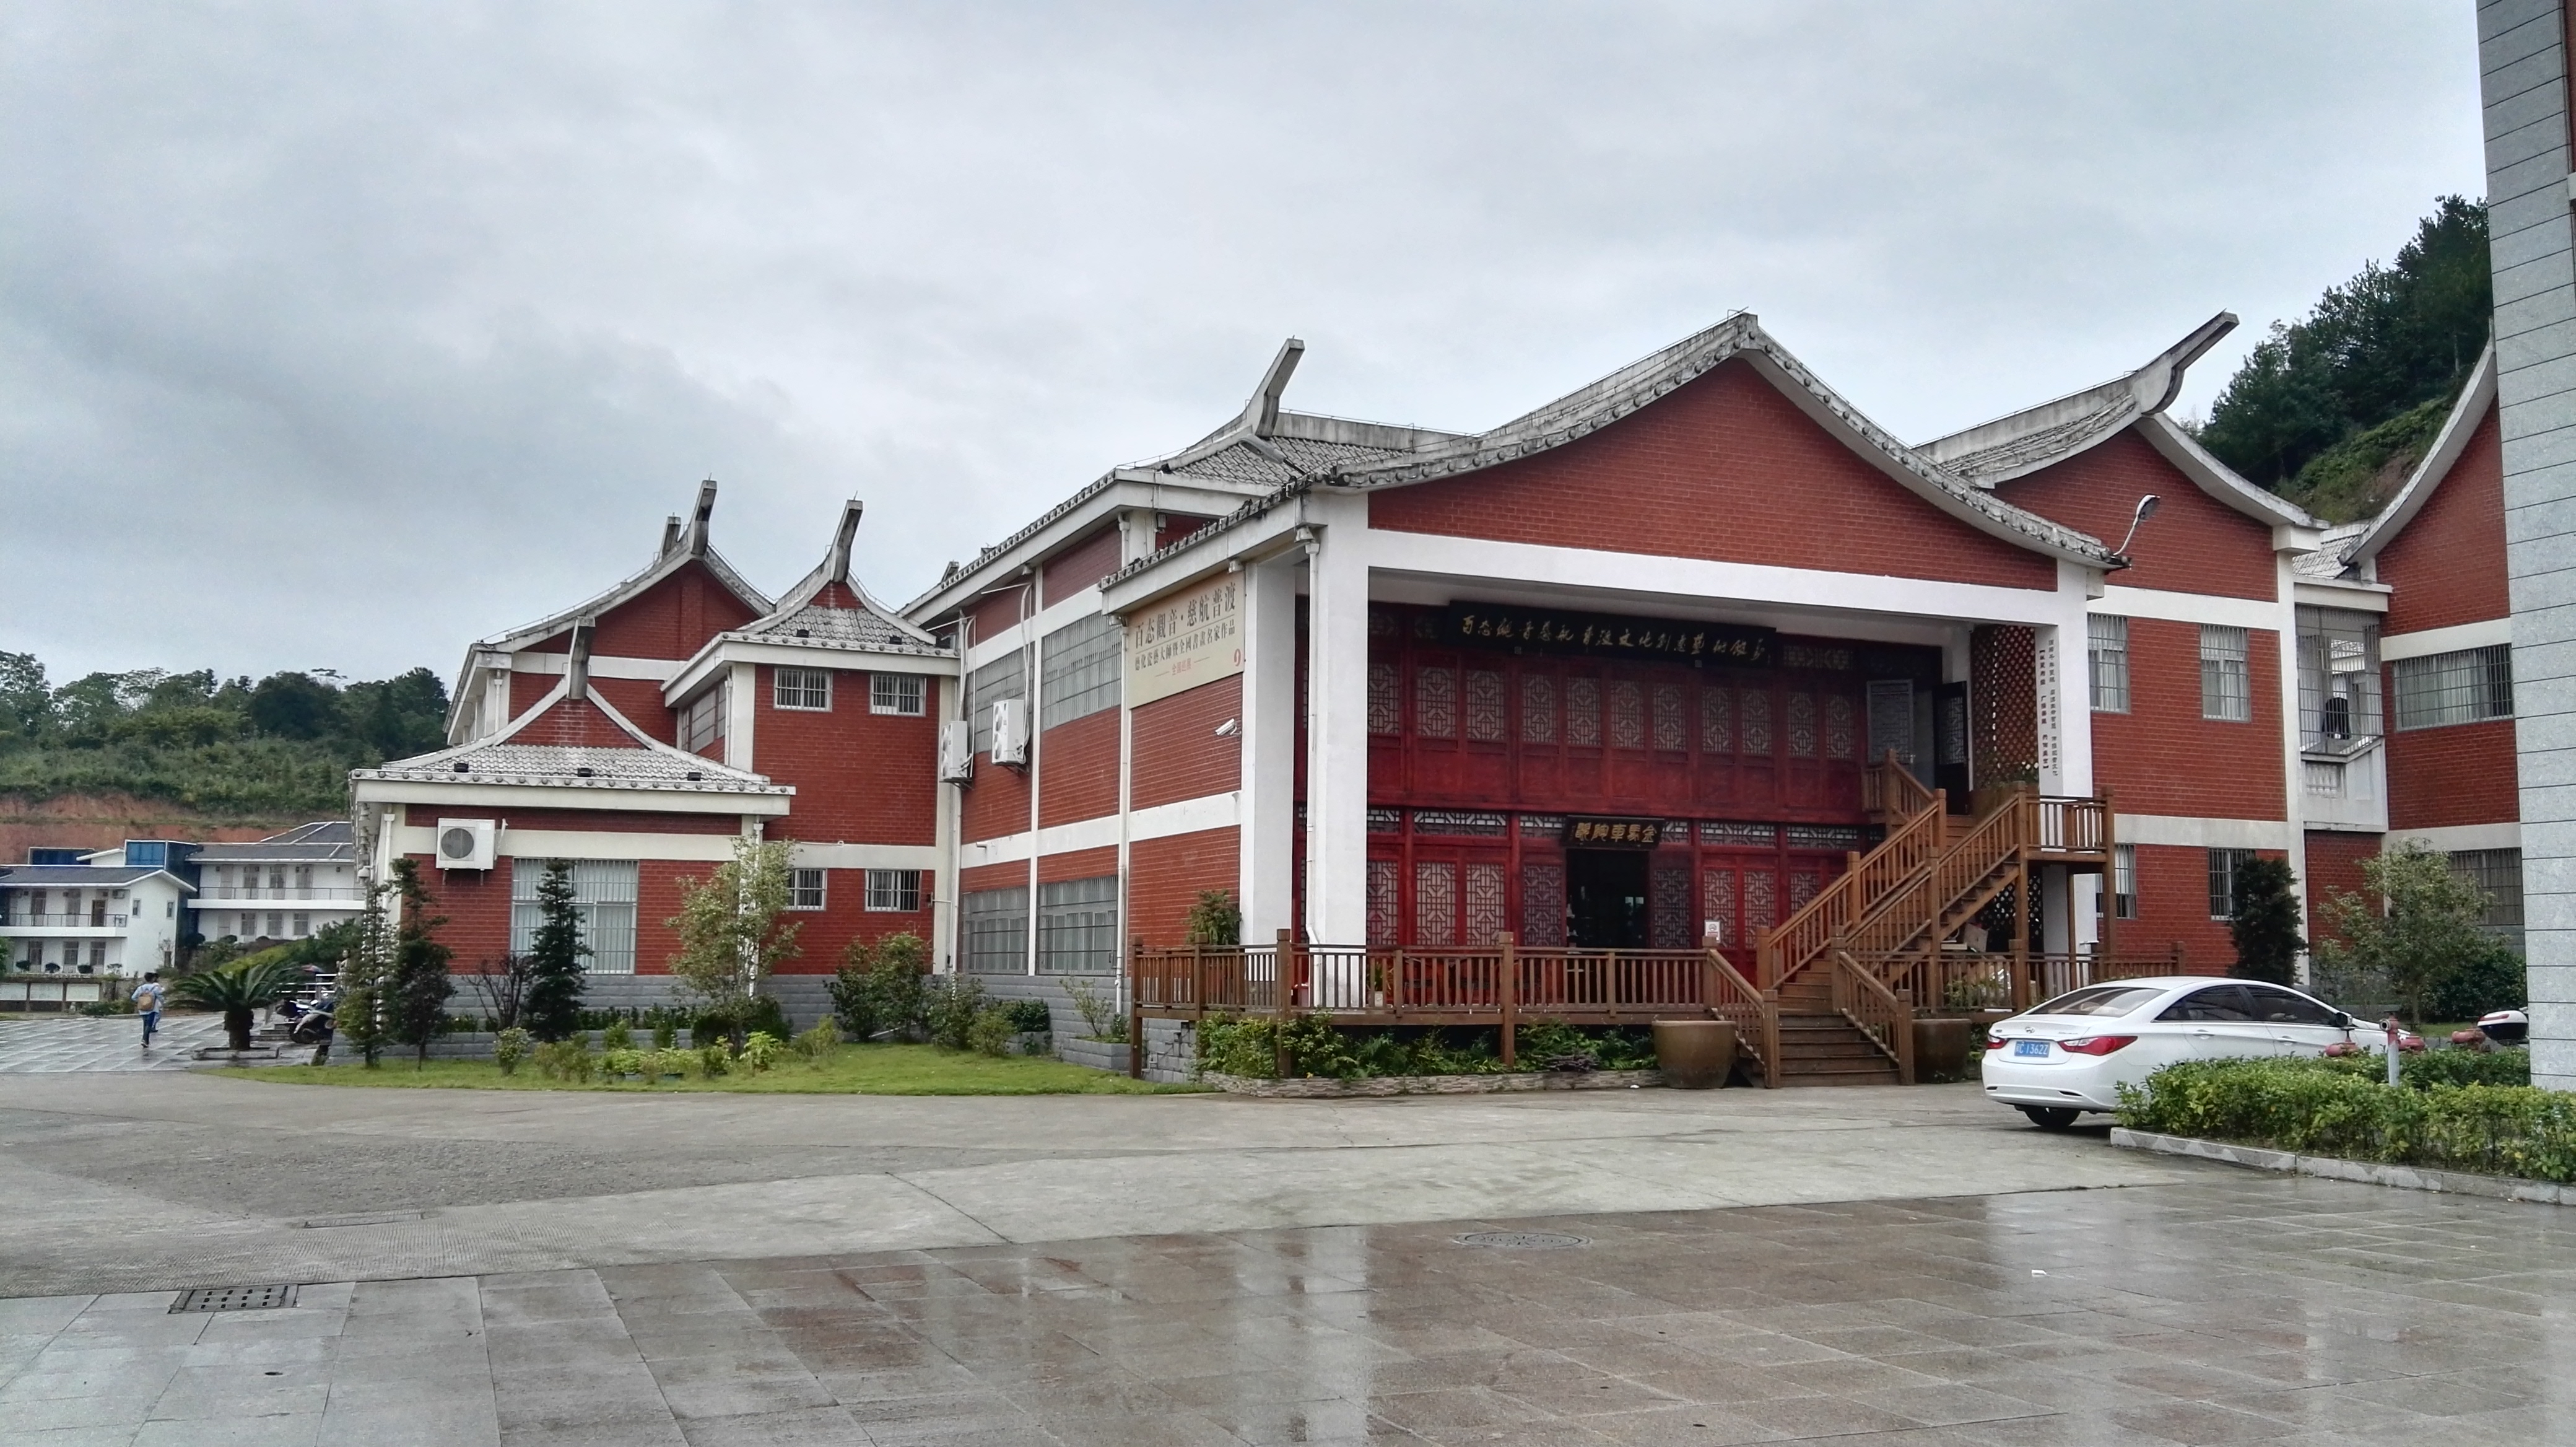 正文  德化县陶瓷博物馆位于德化县唐寨山森林公园内,毗邻陶瓷学院